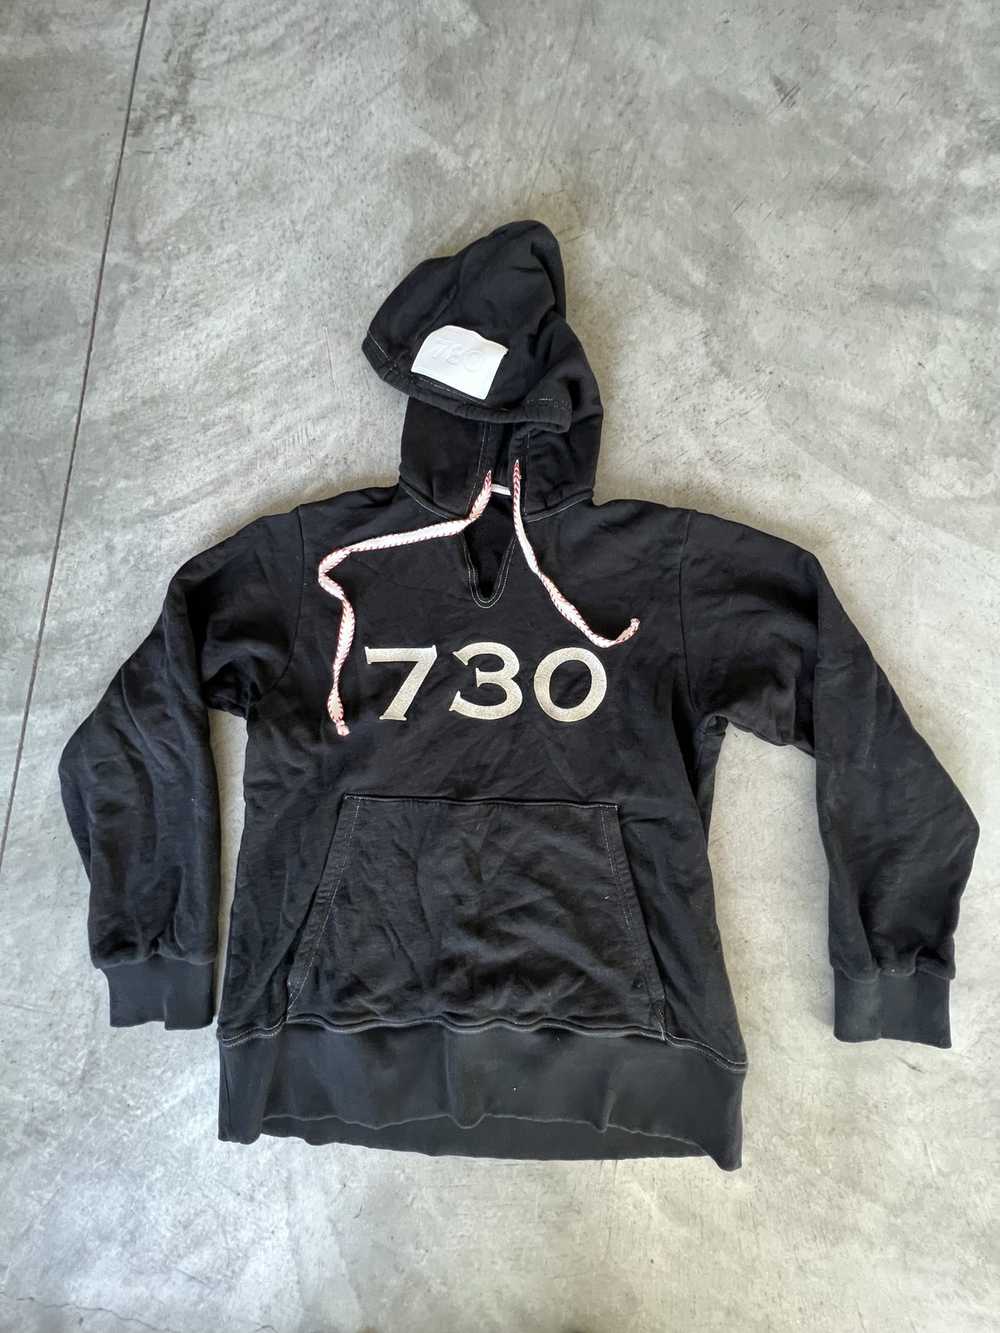 Vintage 730 hoodie - image 1